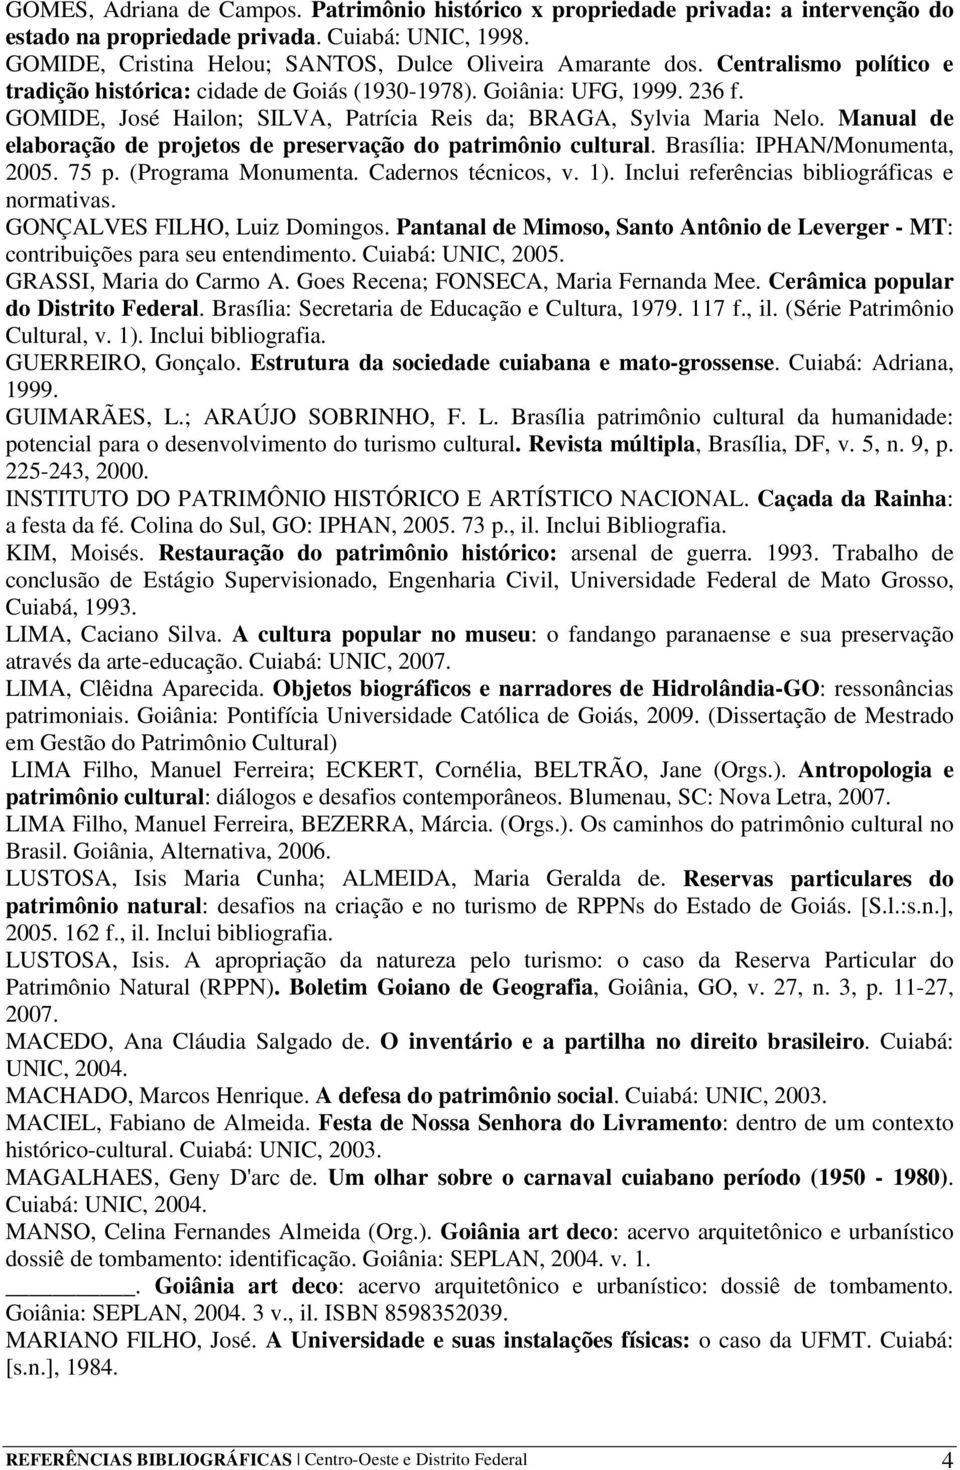 Manual de elaboração de projetos de preservação do patrimônio cultural. Brasília: IPHAN/Monumenta, 2005. 75 p. (Programa Monumenta. Cadernos técnicos, v. 1).